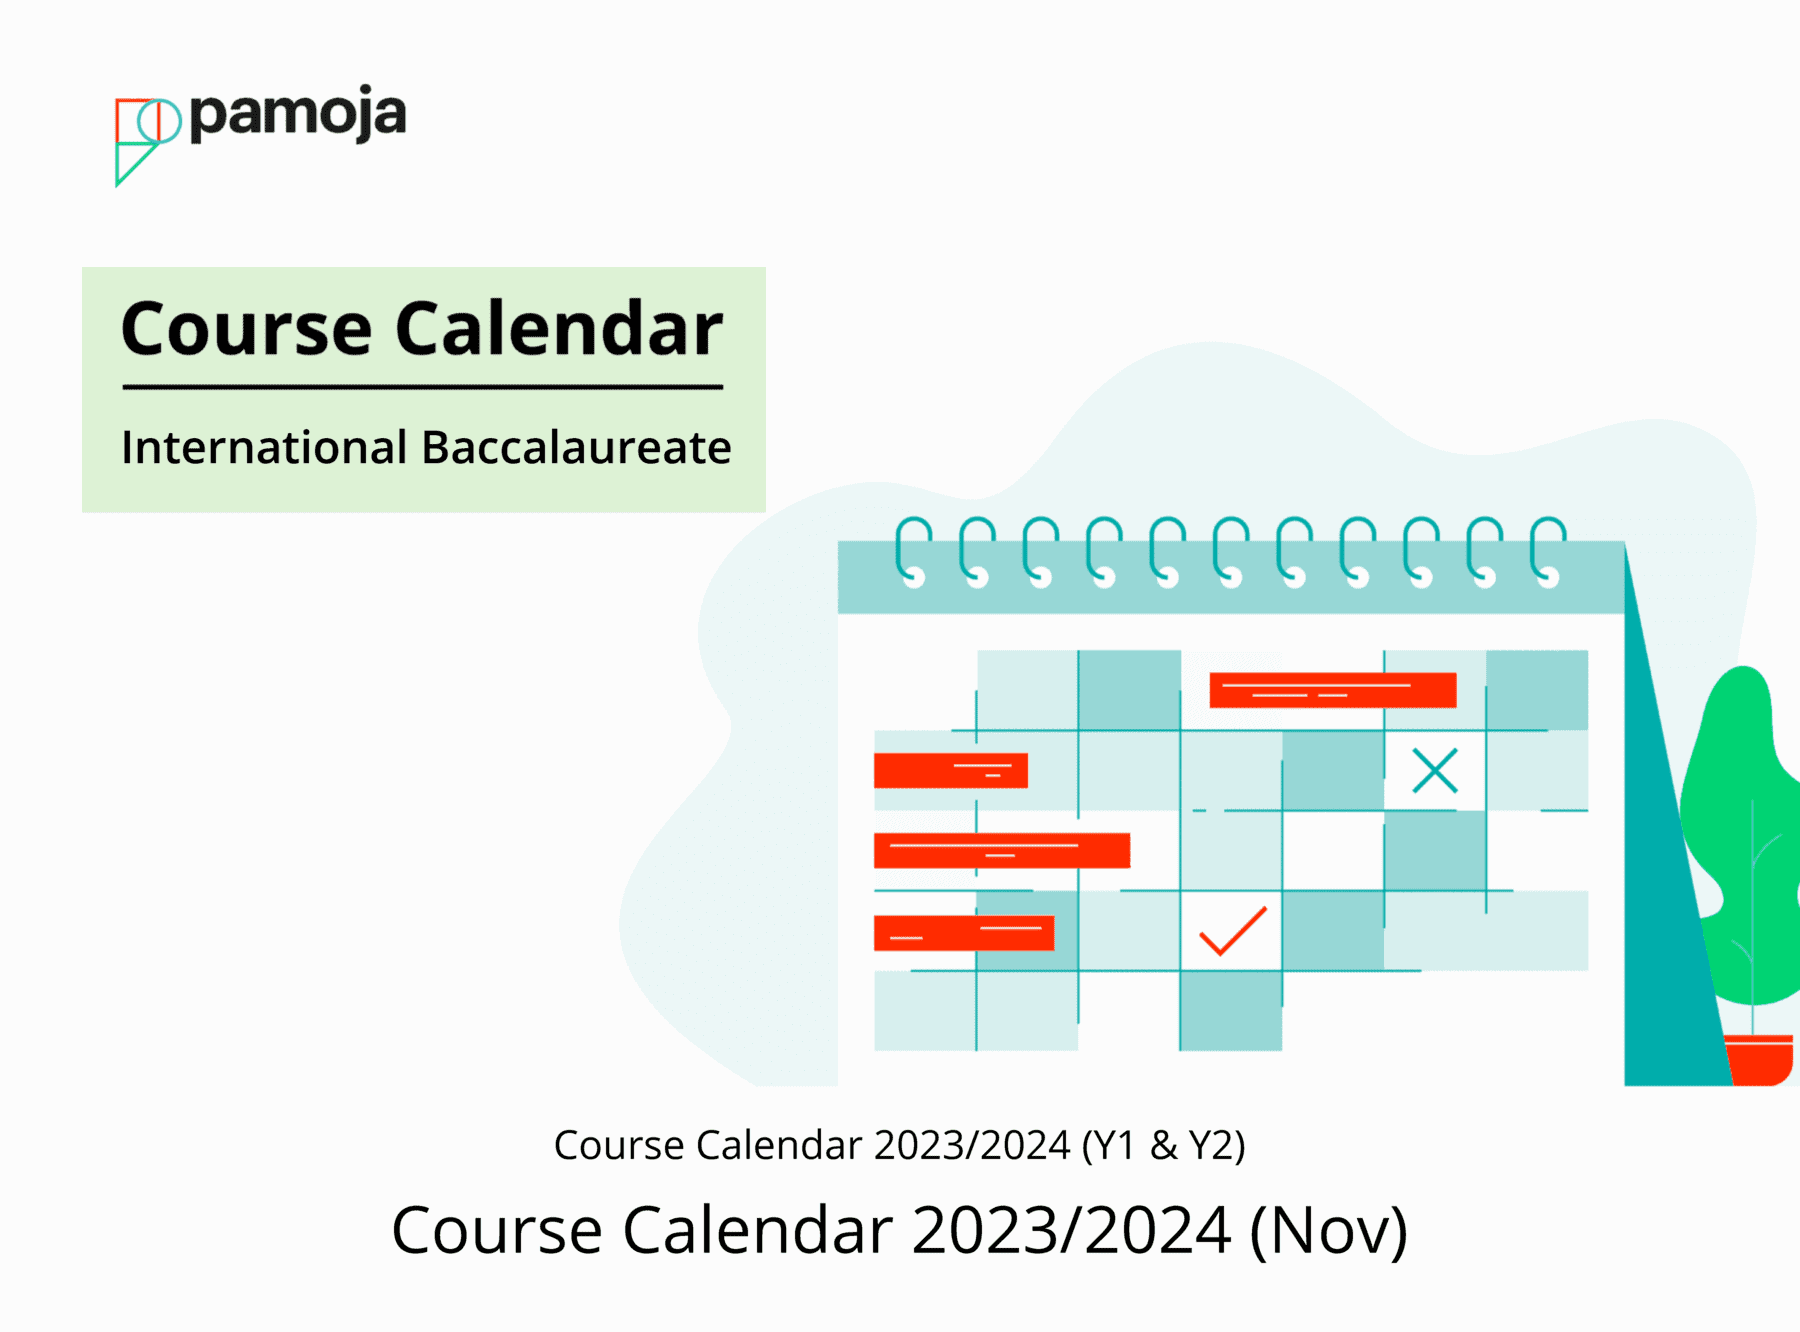 Course Calendar 2023/2024 (Nov)